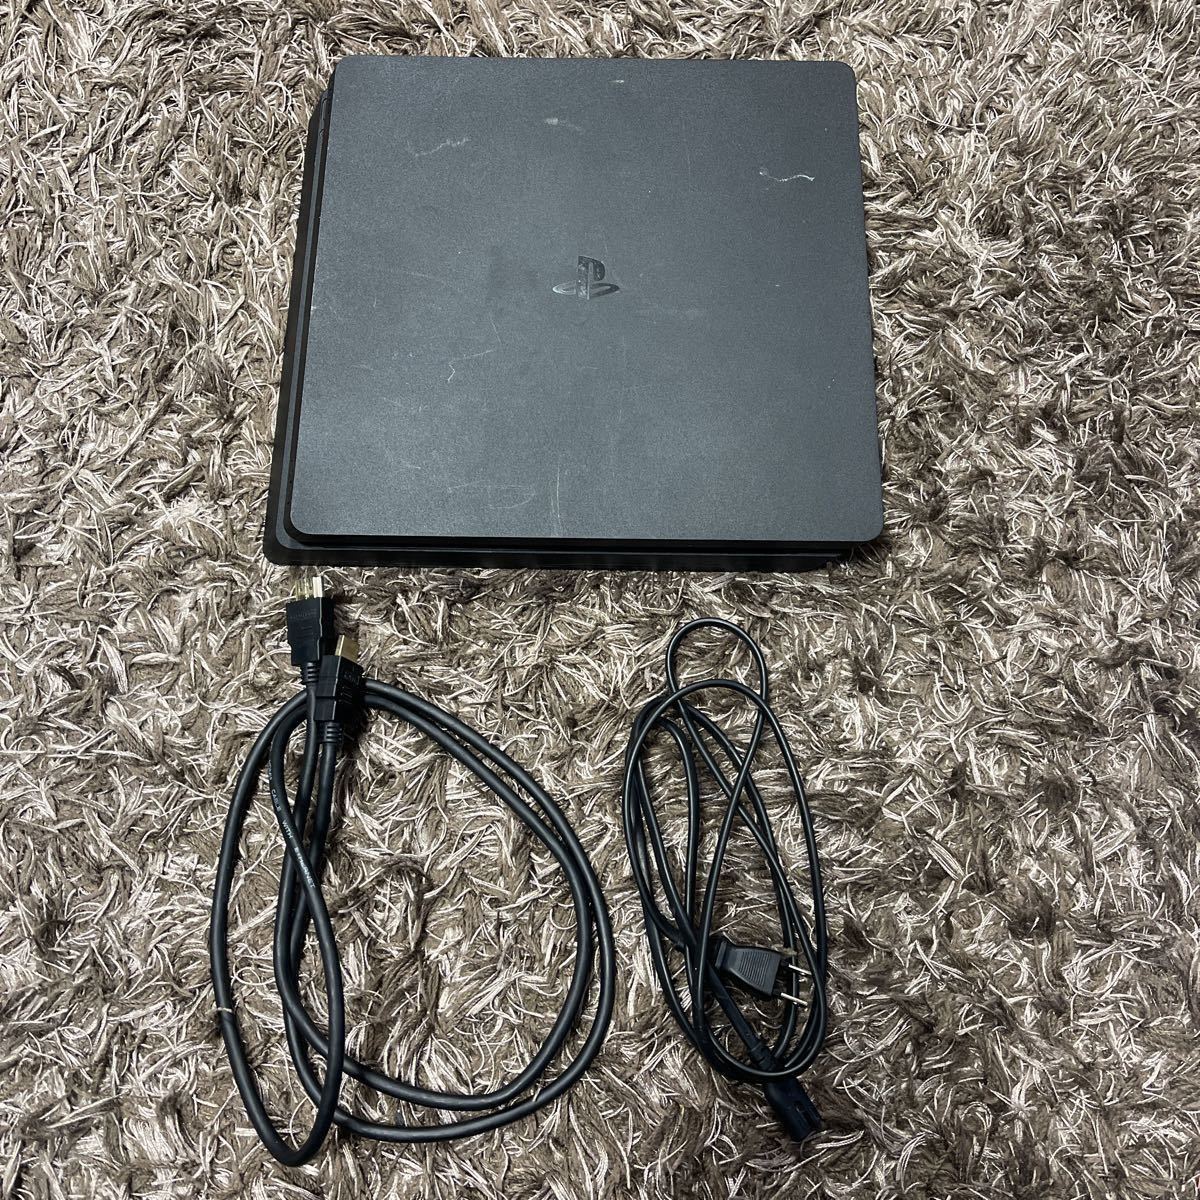 中古品 SONY PS4 プレイステーション4 CUH-2100AB01 500GB ブラック 箱